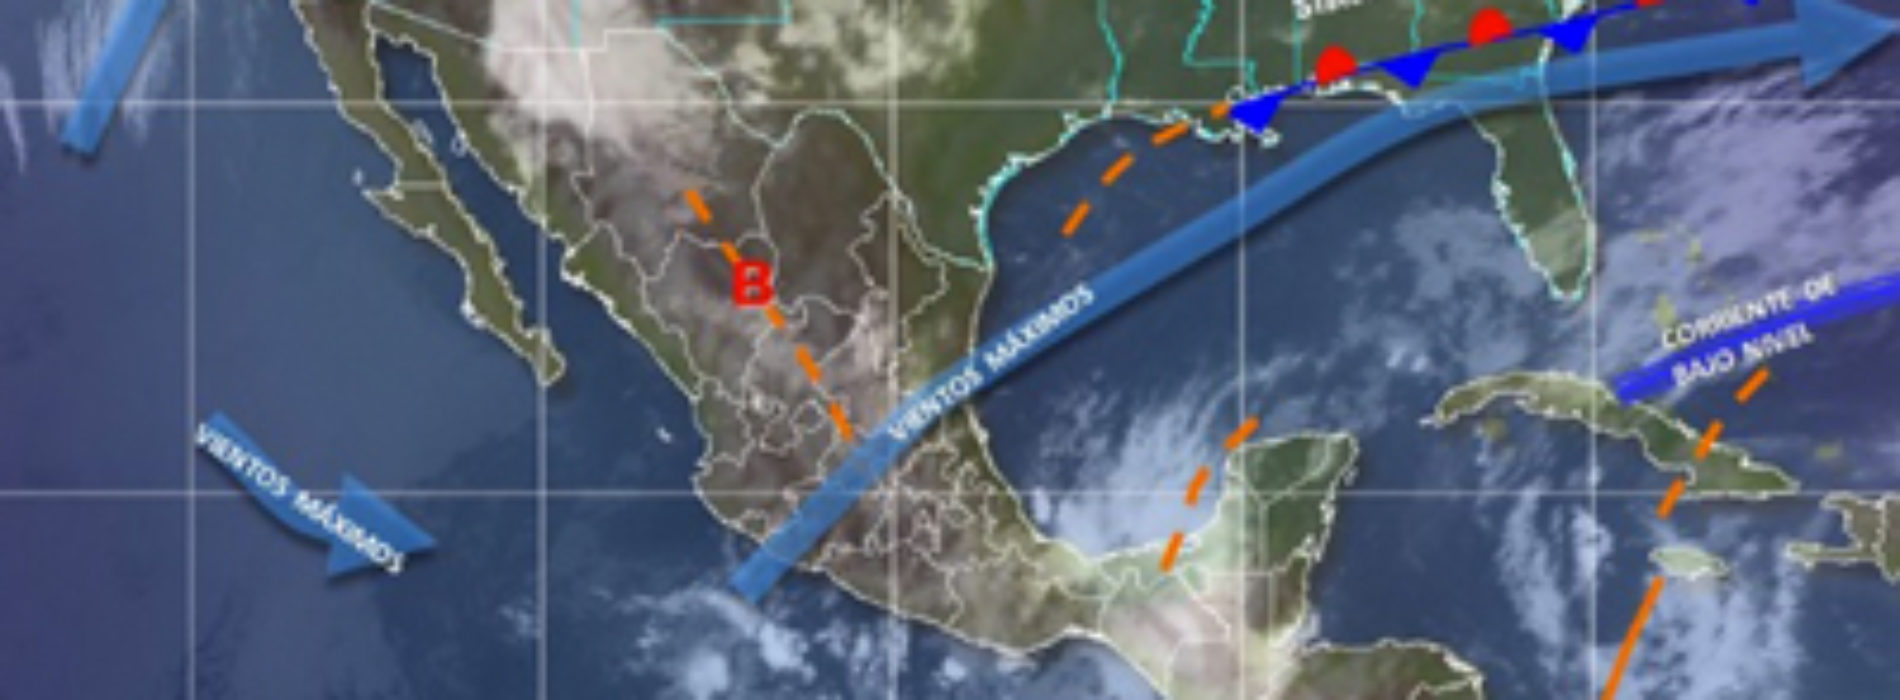 Para este viernes, potencial de lluvias puntuales intensas en Oaxaca